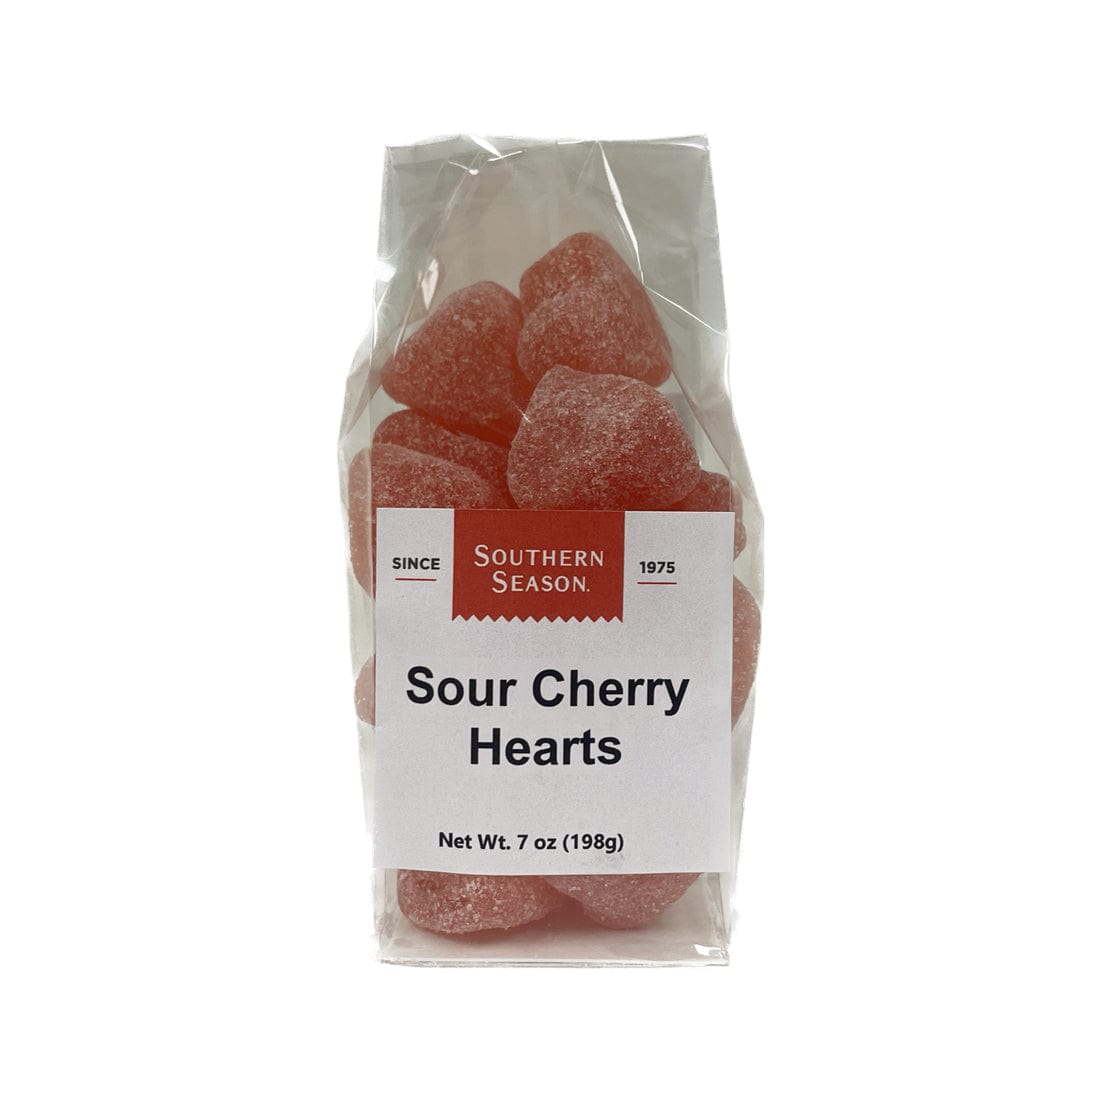 Southern Season Southern Season Valentine's Sour Cherry Hearts 7 oz